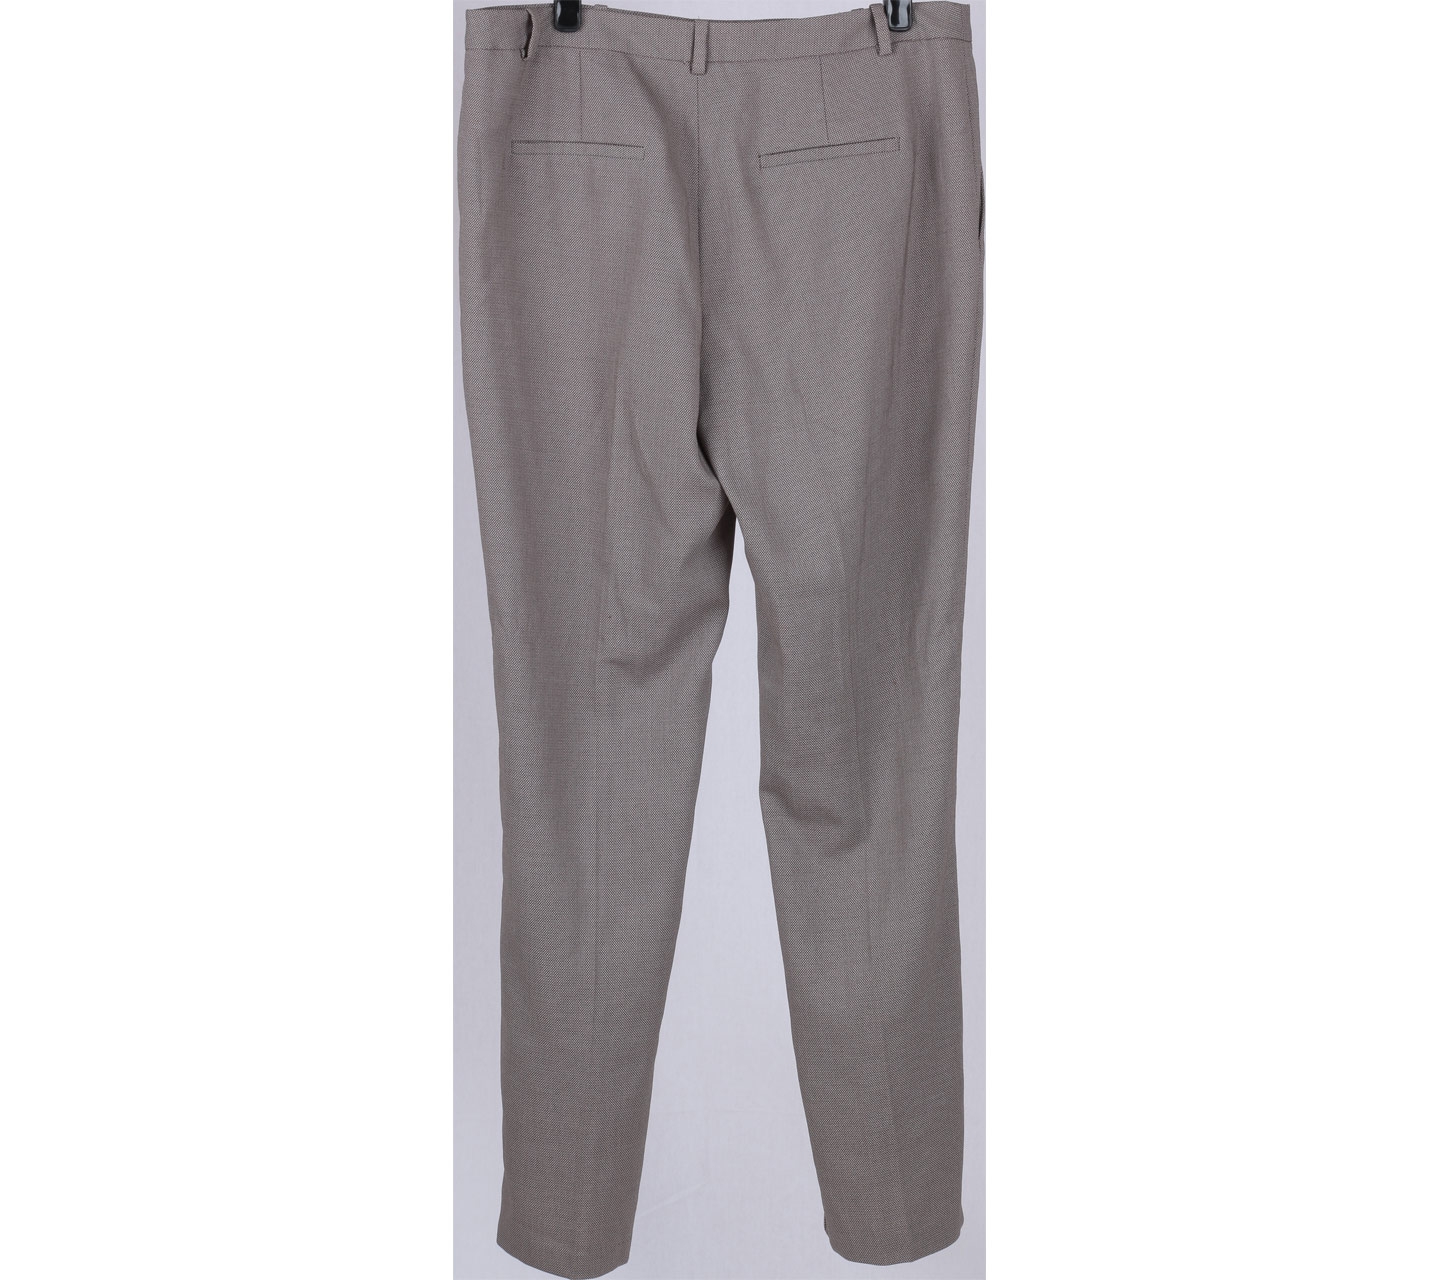 Zara Grey Patterned Pants